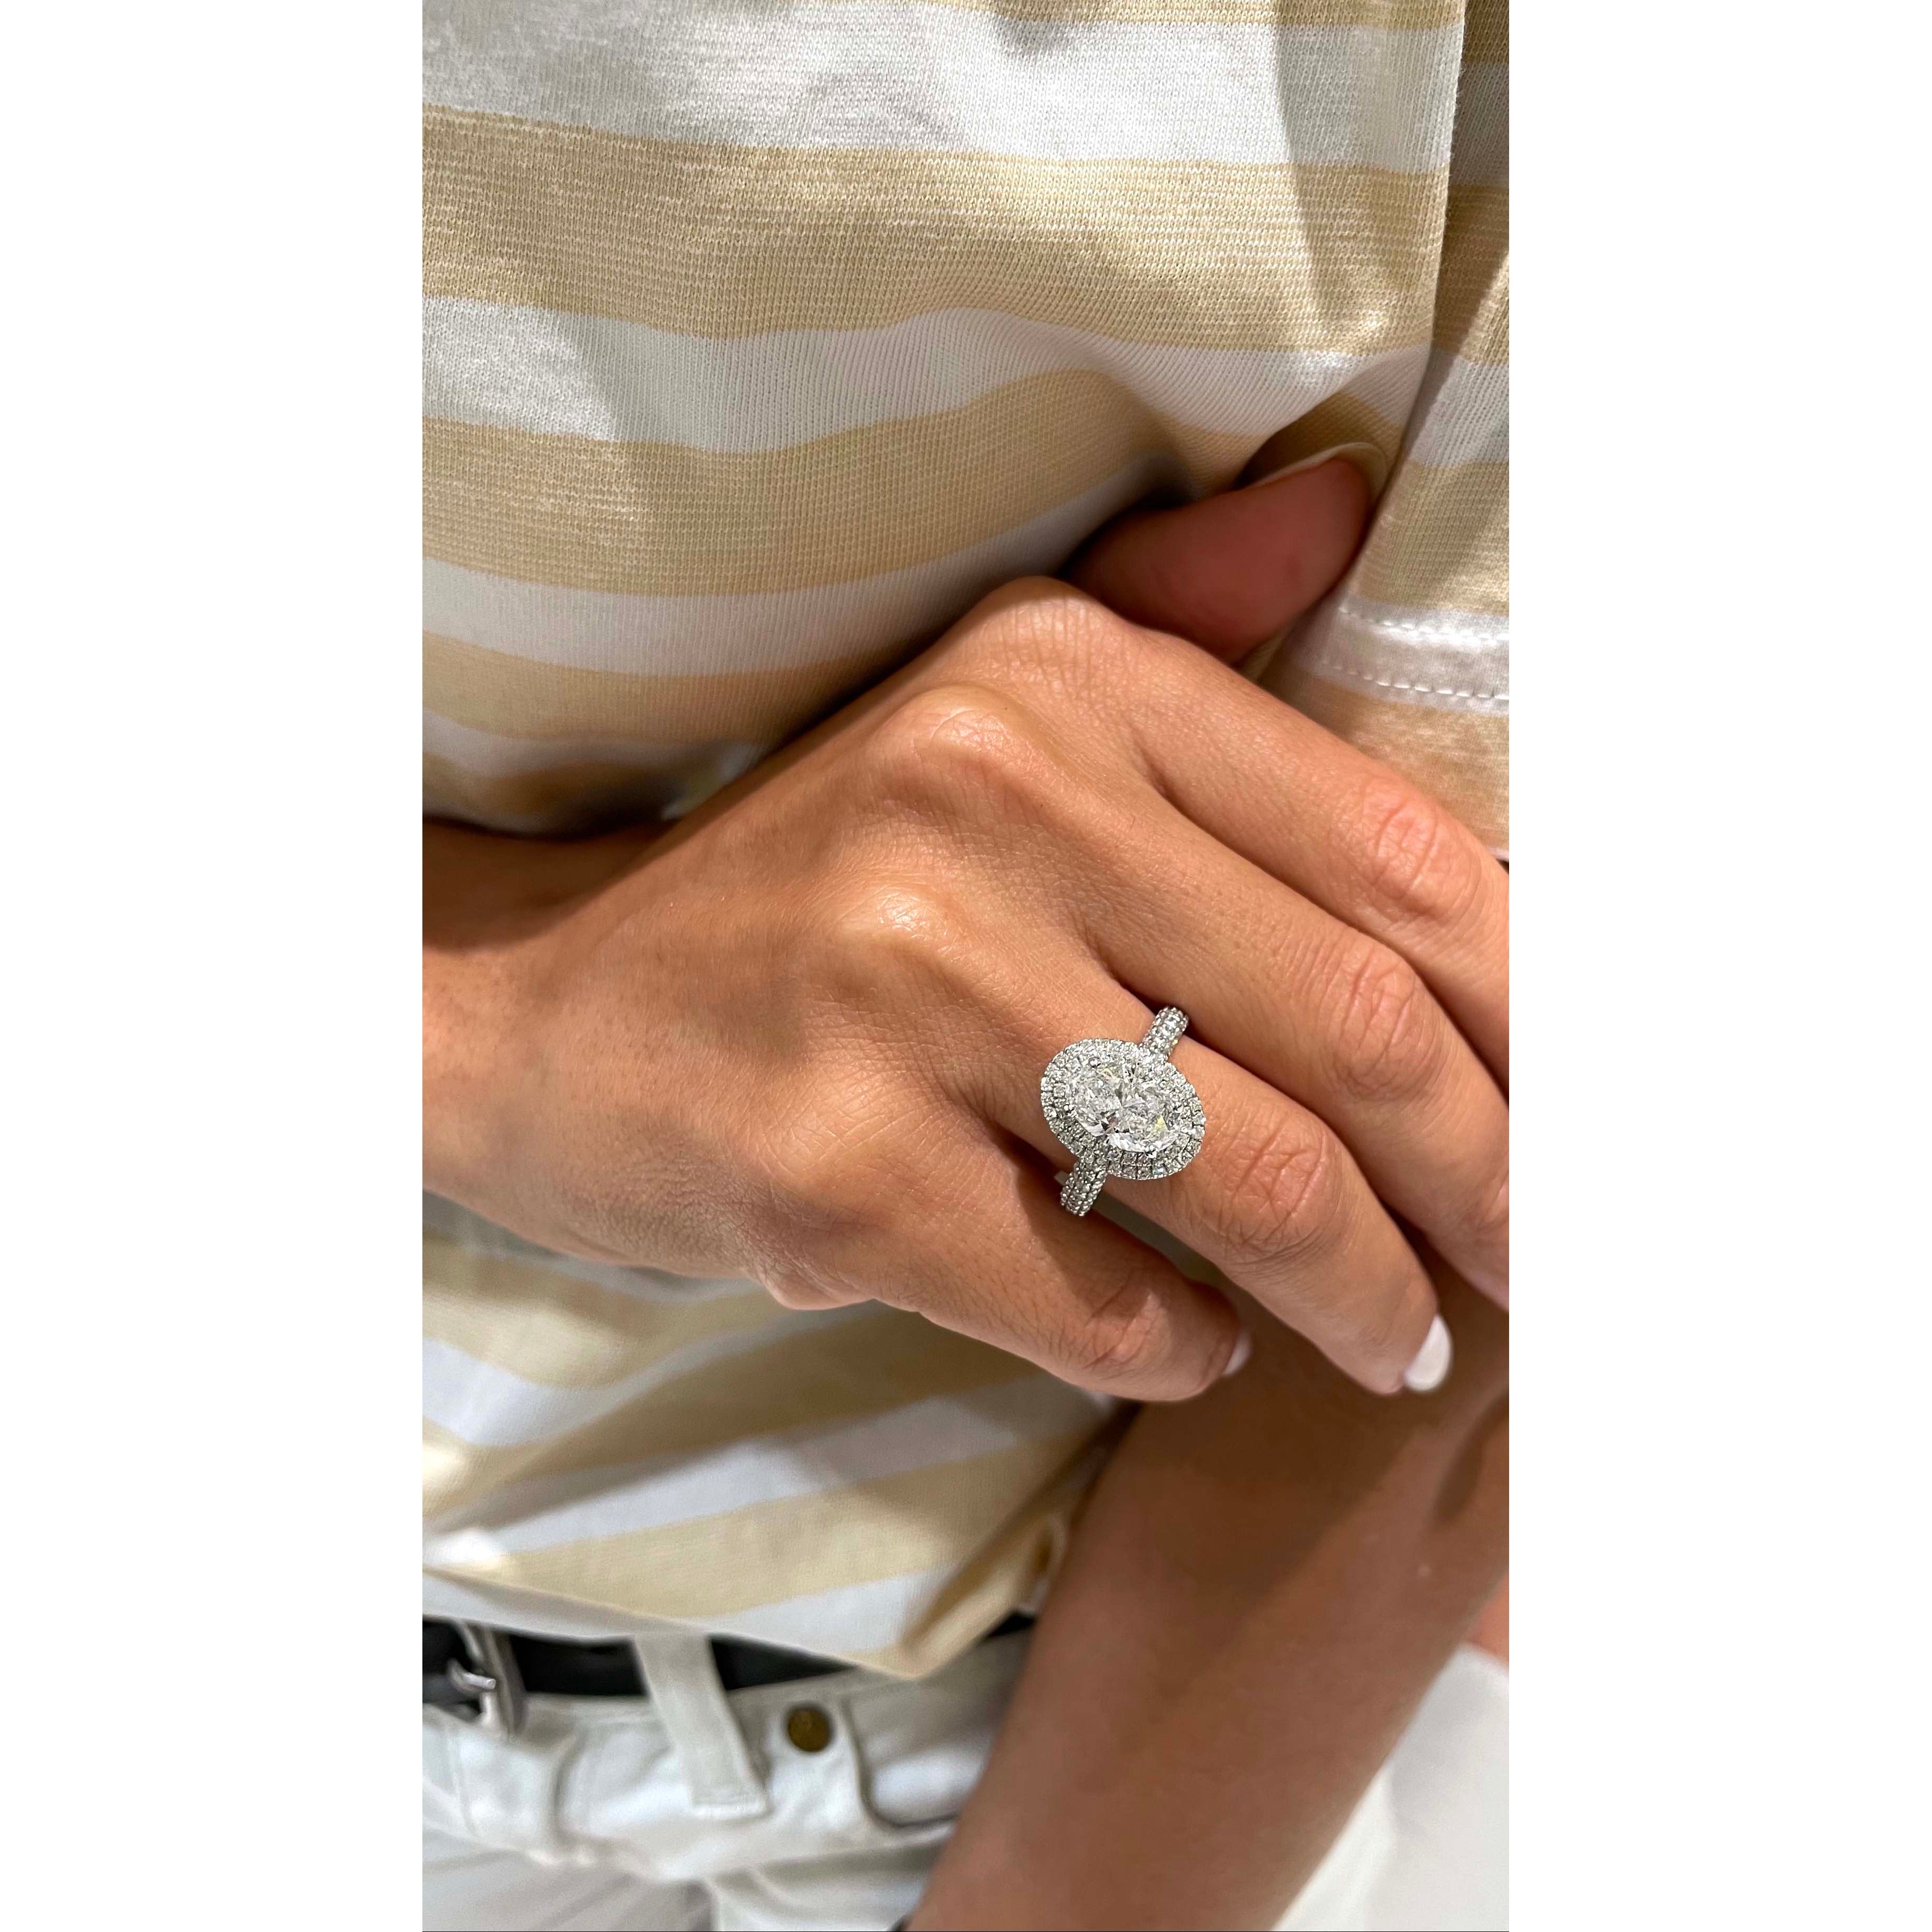 Nora Diamond Engagement Ring   (3 Carat) -14K White Gold